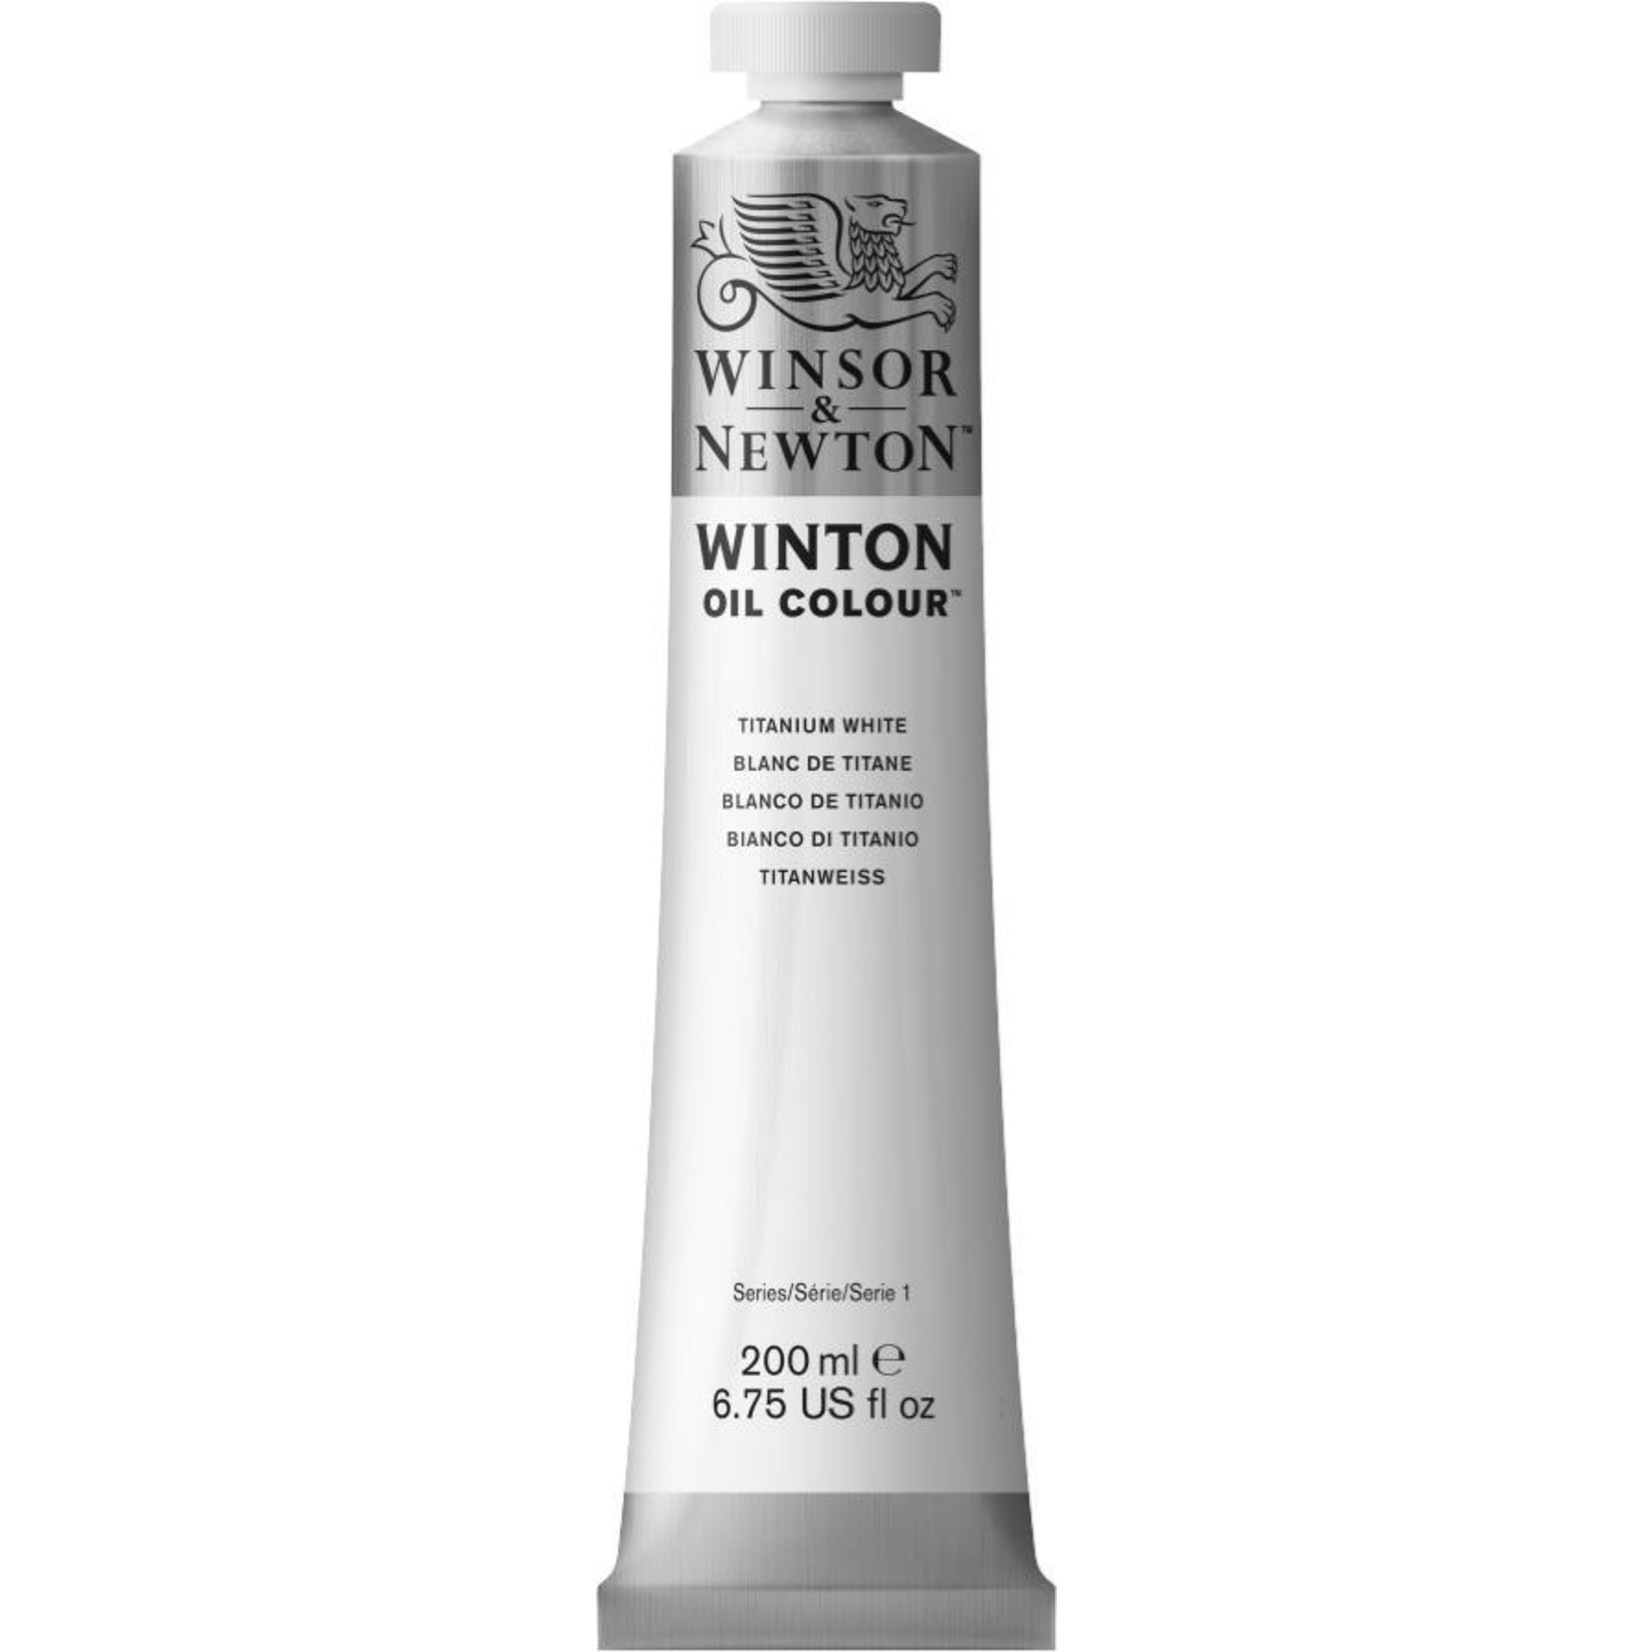 WINSOR NEWTON WINTON OIL COLOUR TITANIUM WHITE 200ML